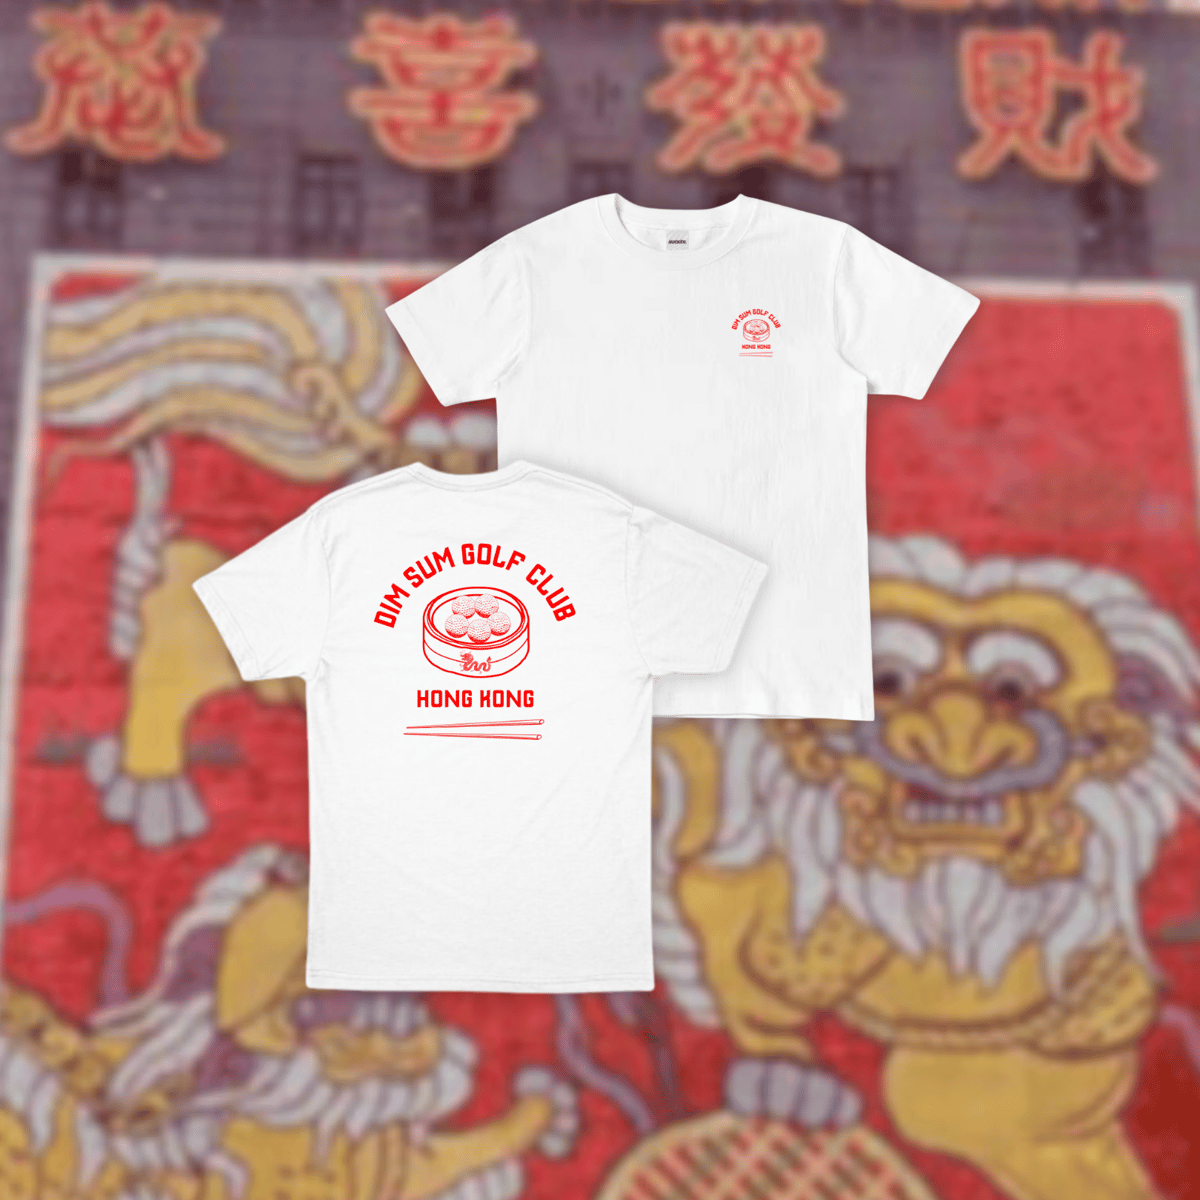 [Limited Edition] Year of the Dragon T-Shirt | Dim Sum Golf Club